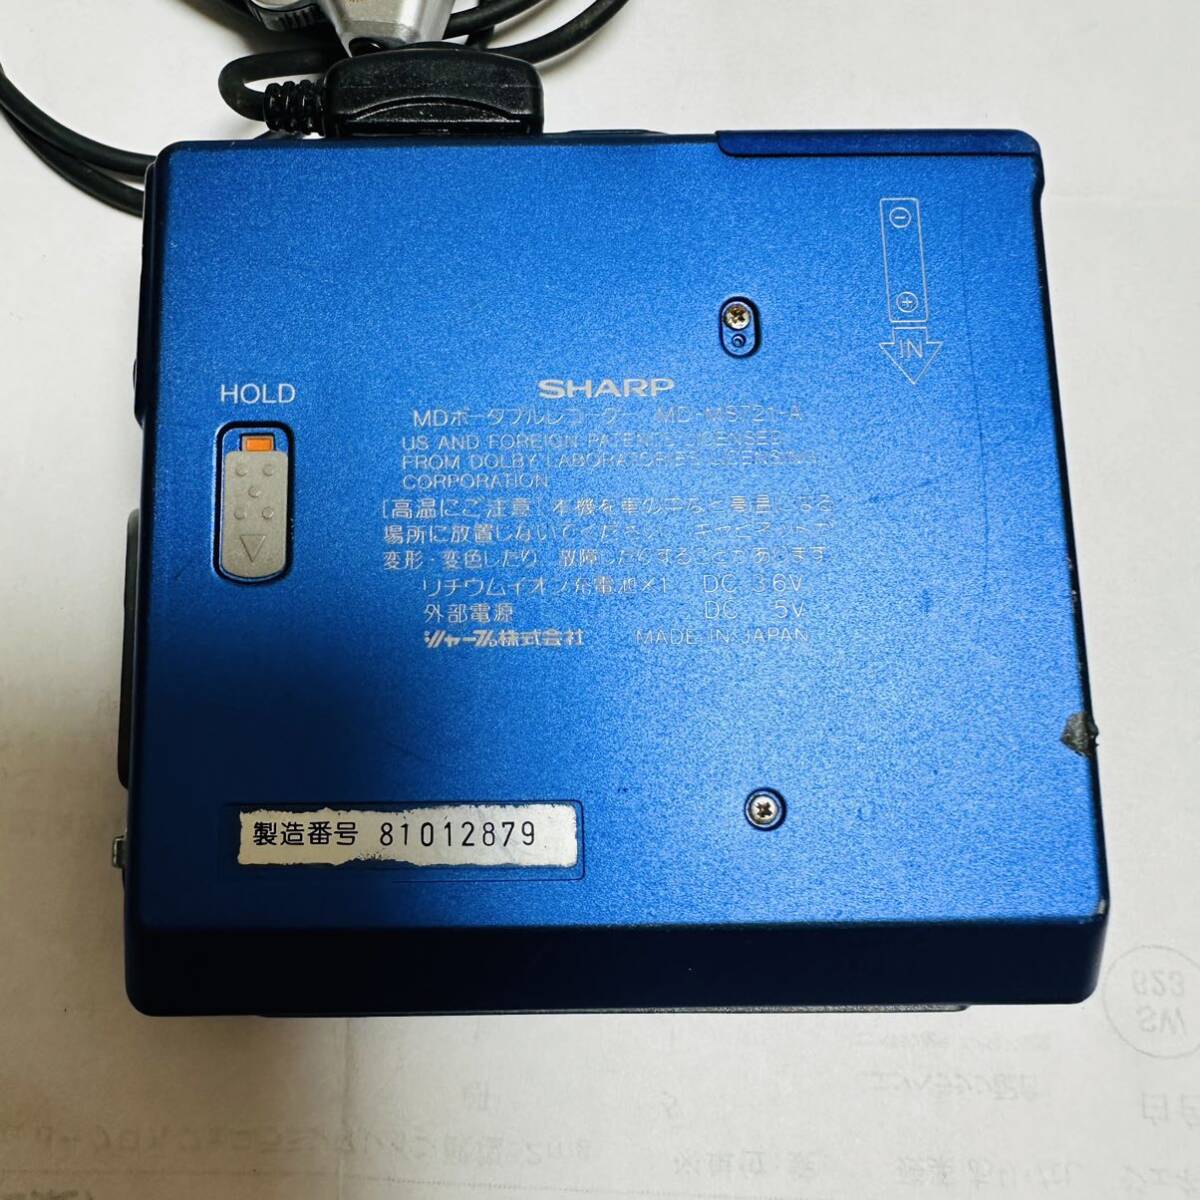 SHARP MD портативный магнитофон MD-MS721-A